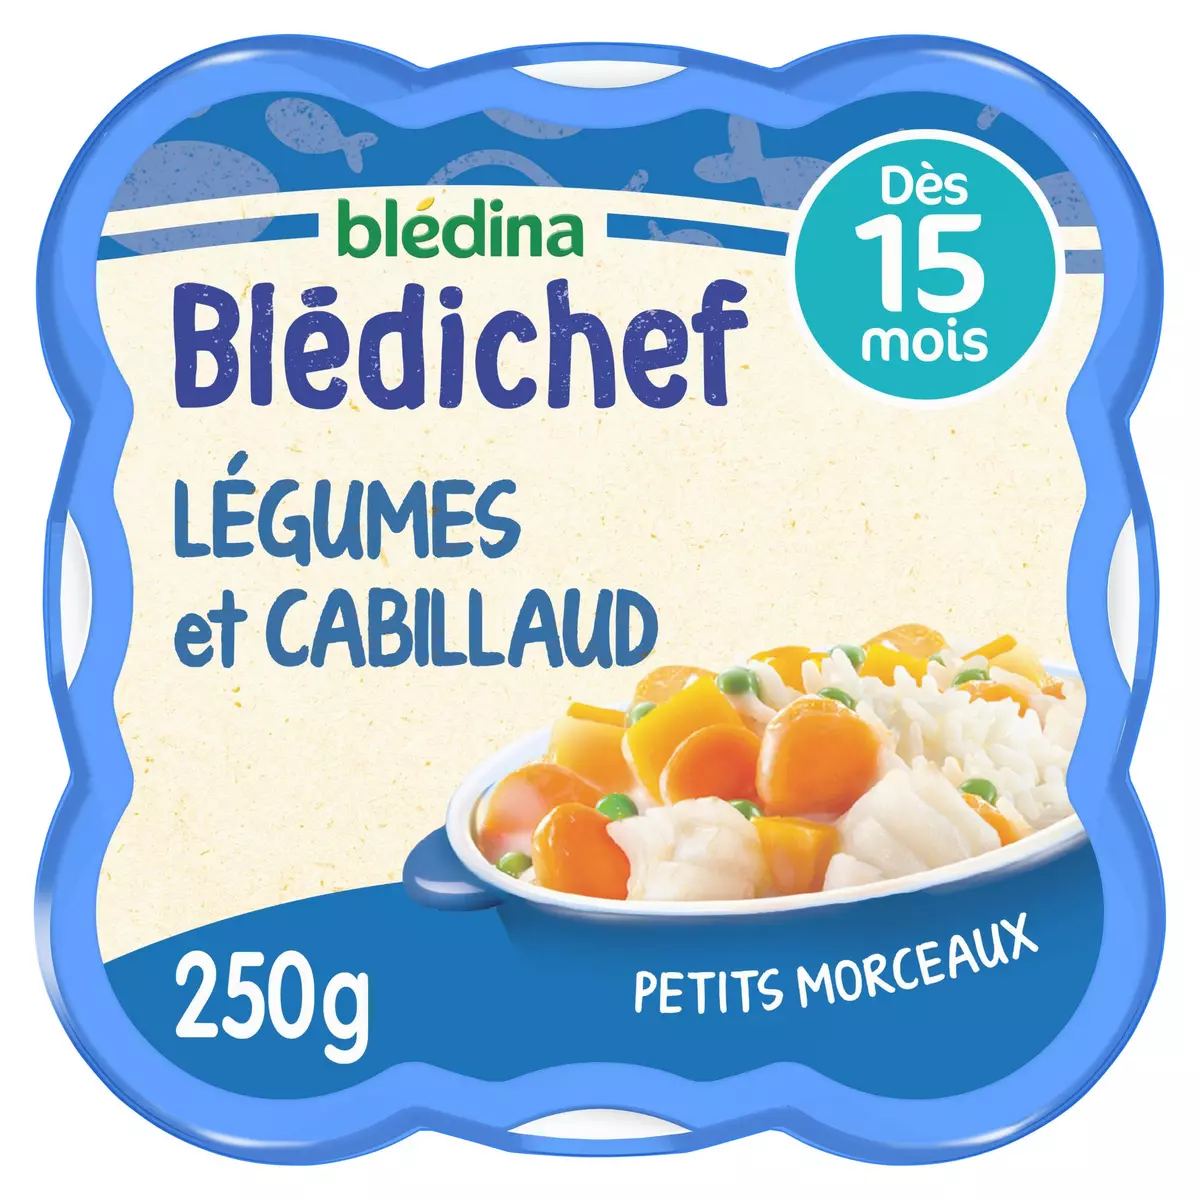 BLEDINA Blédichef assiette de légumes et cabillaud petits morceaux dès 15 mois  250g